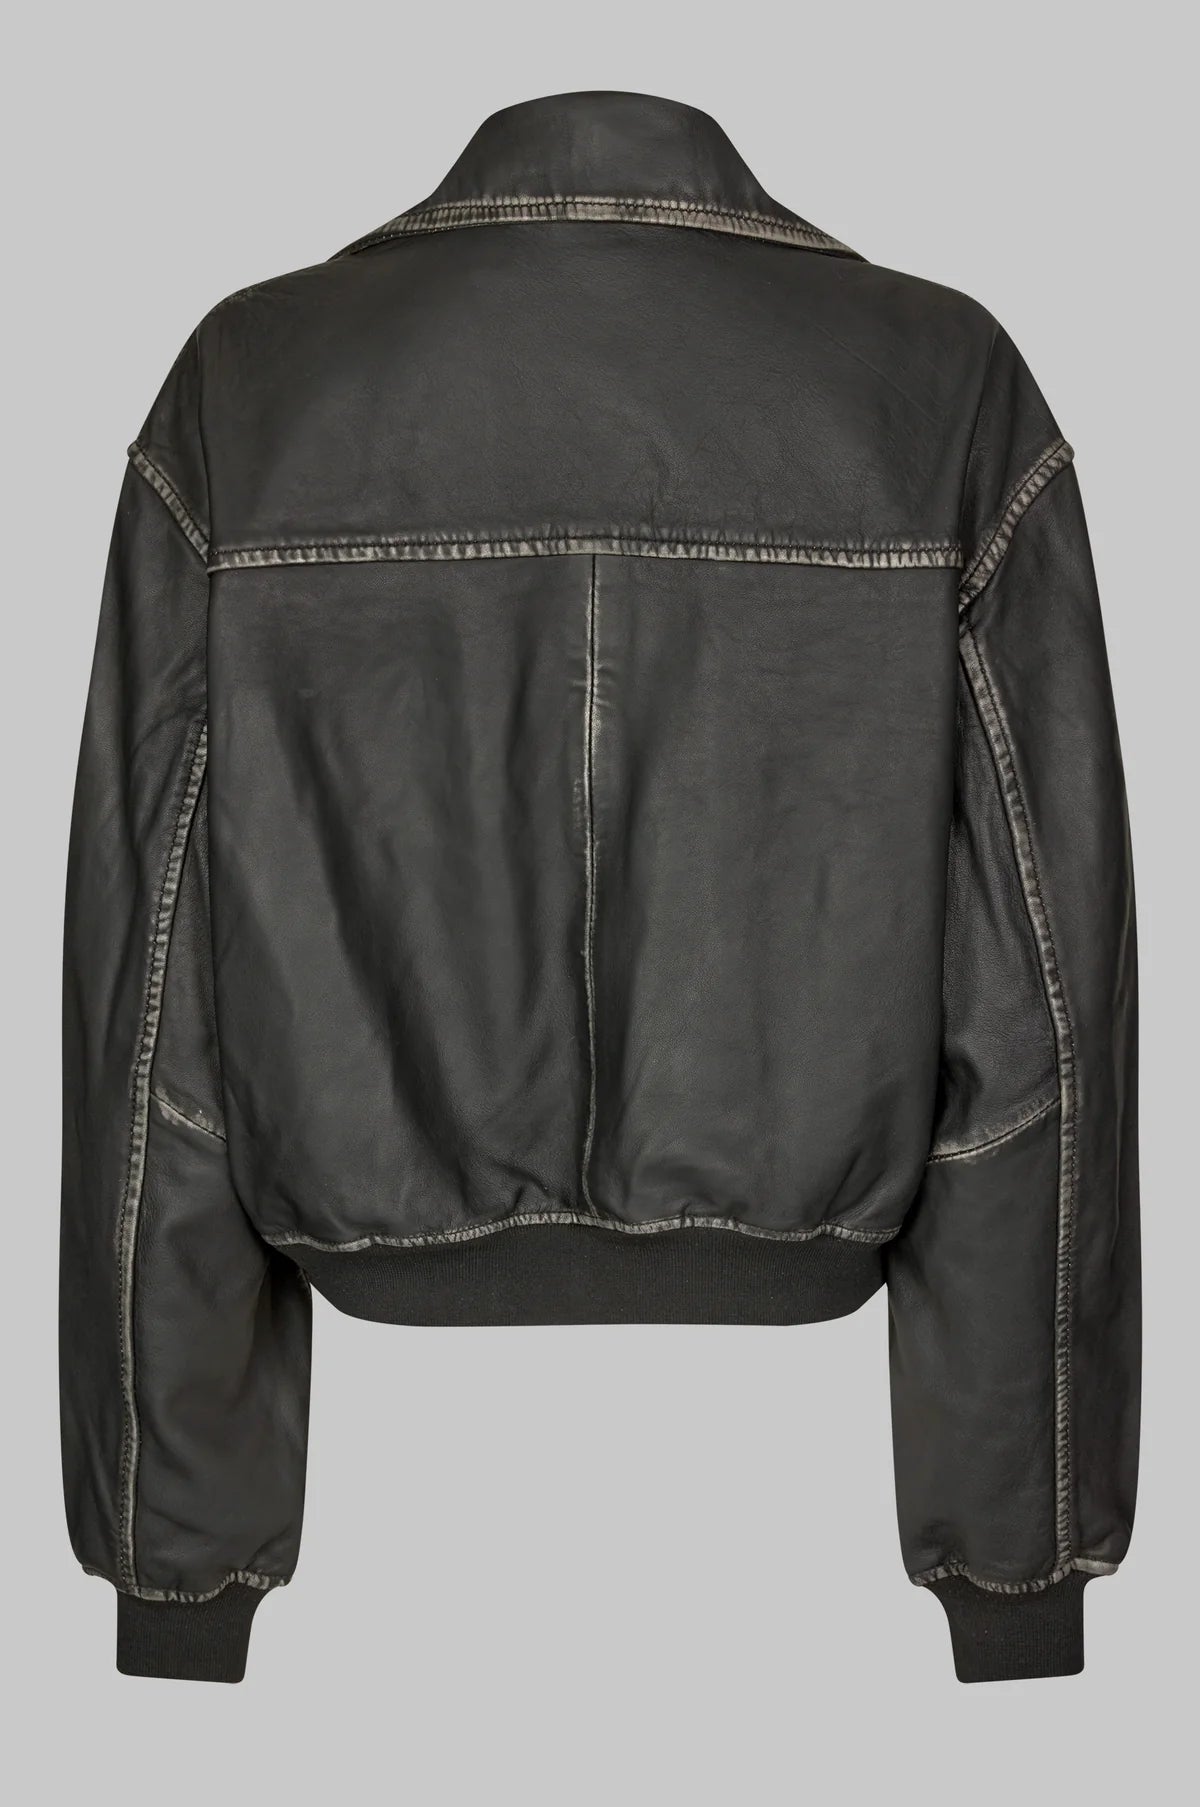 Oval Square Rocker Leather jacket // Vintage Black